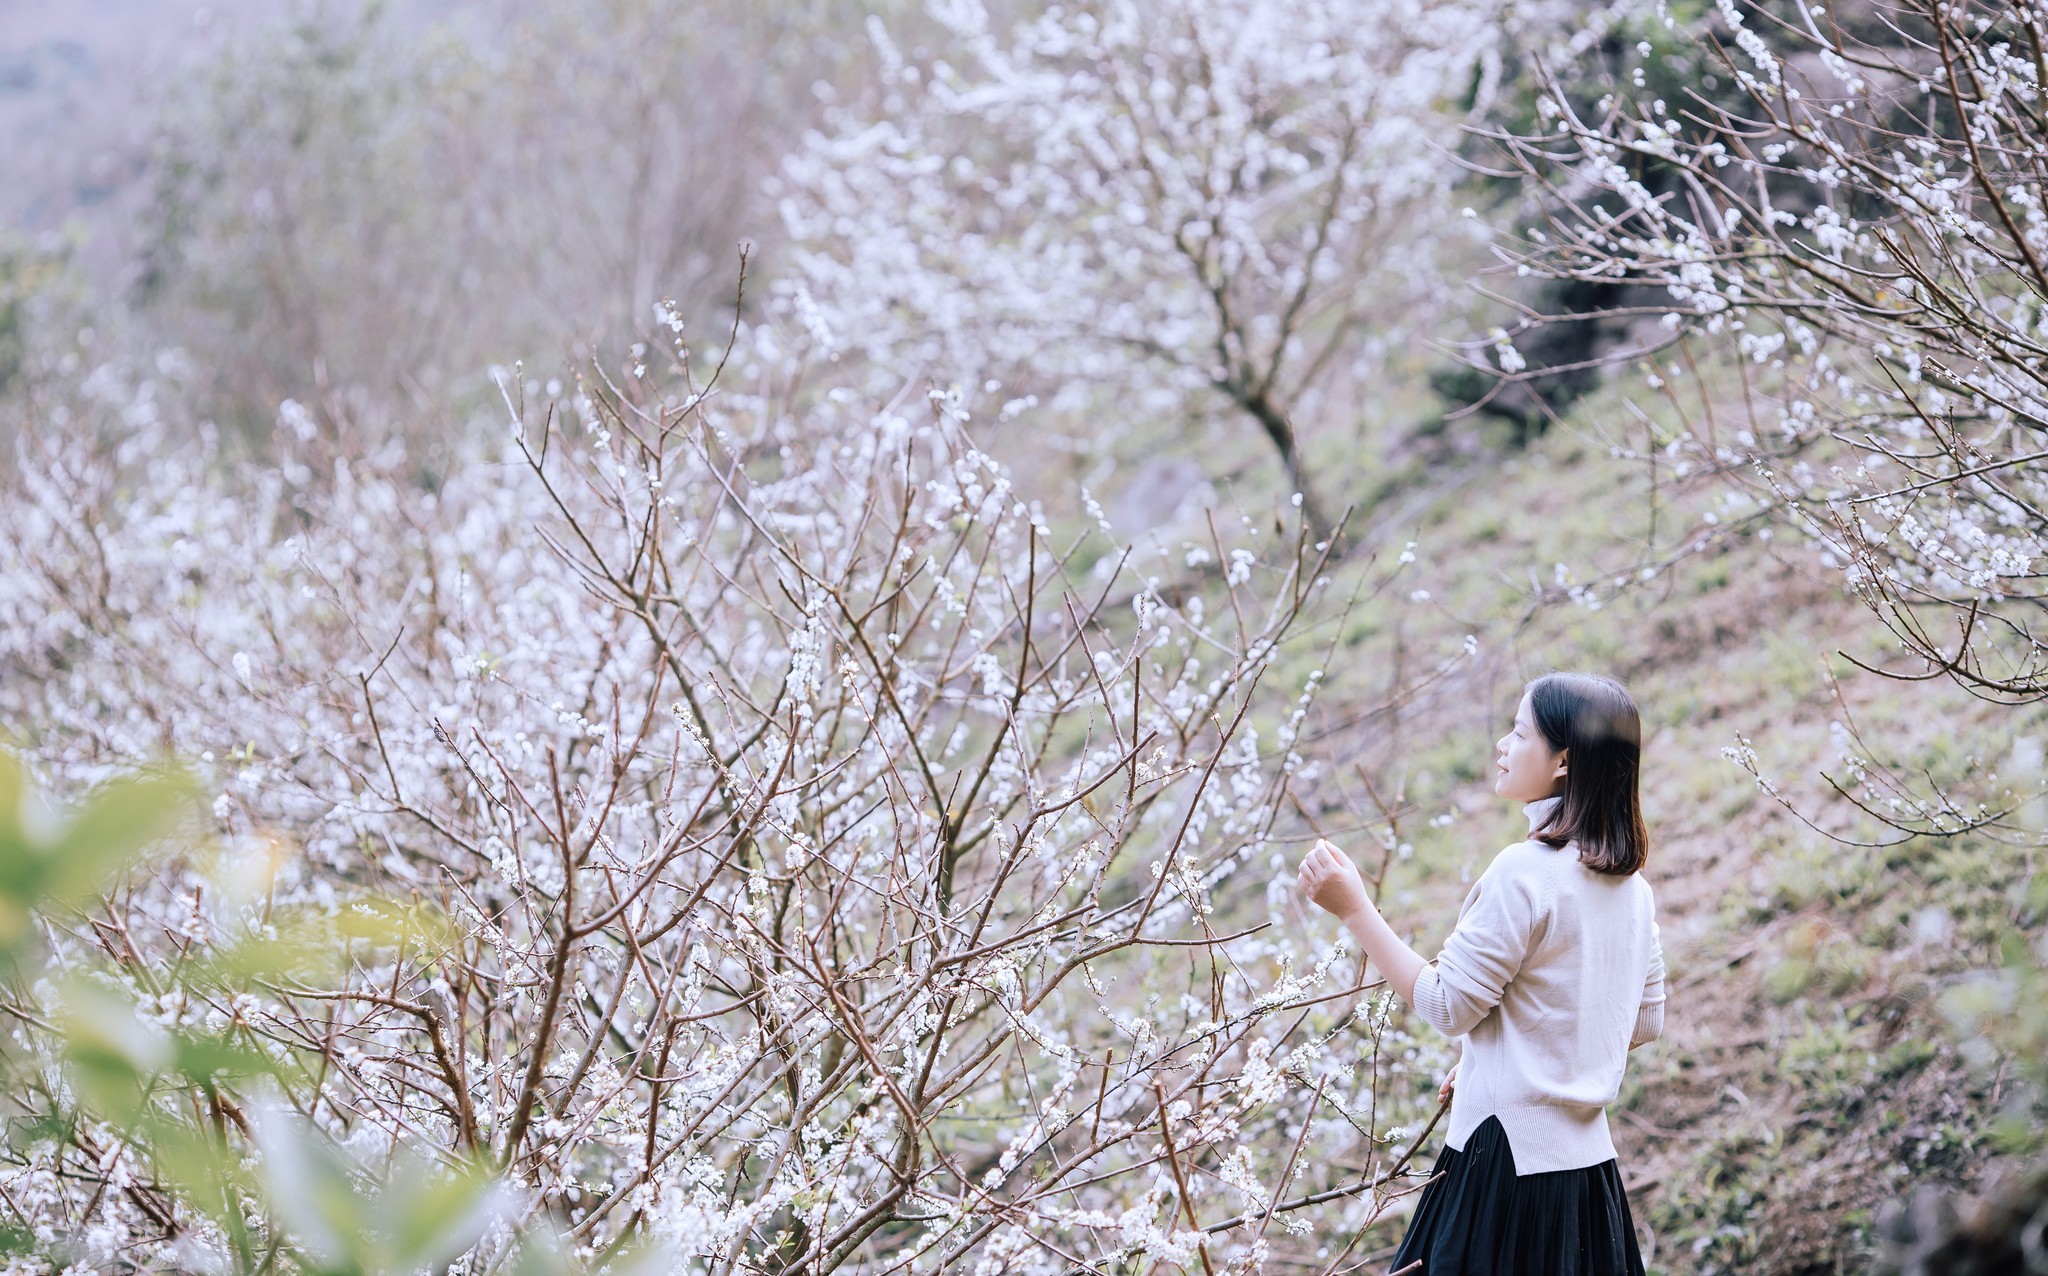 Điểm đẹp nhất để ngắm trọn mùa hoa mận Mộc Châu khoe sắc - 8